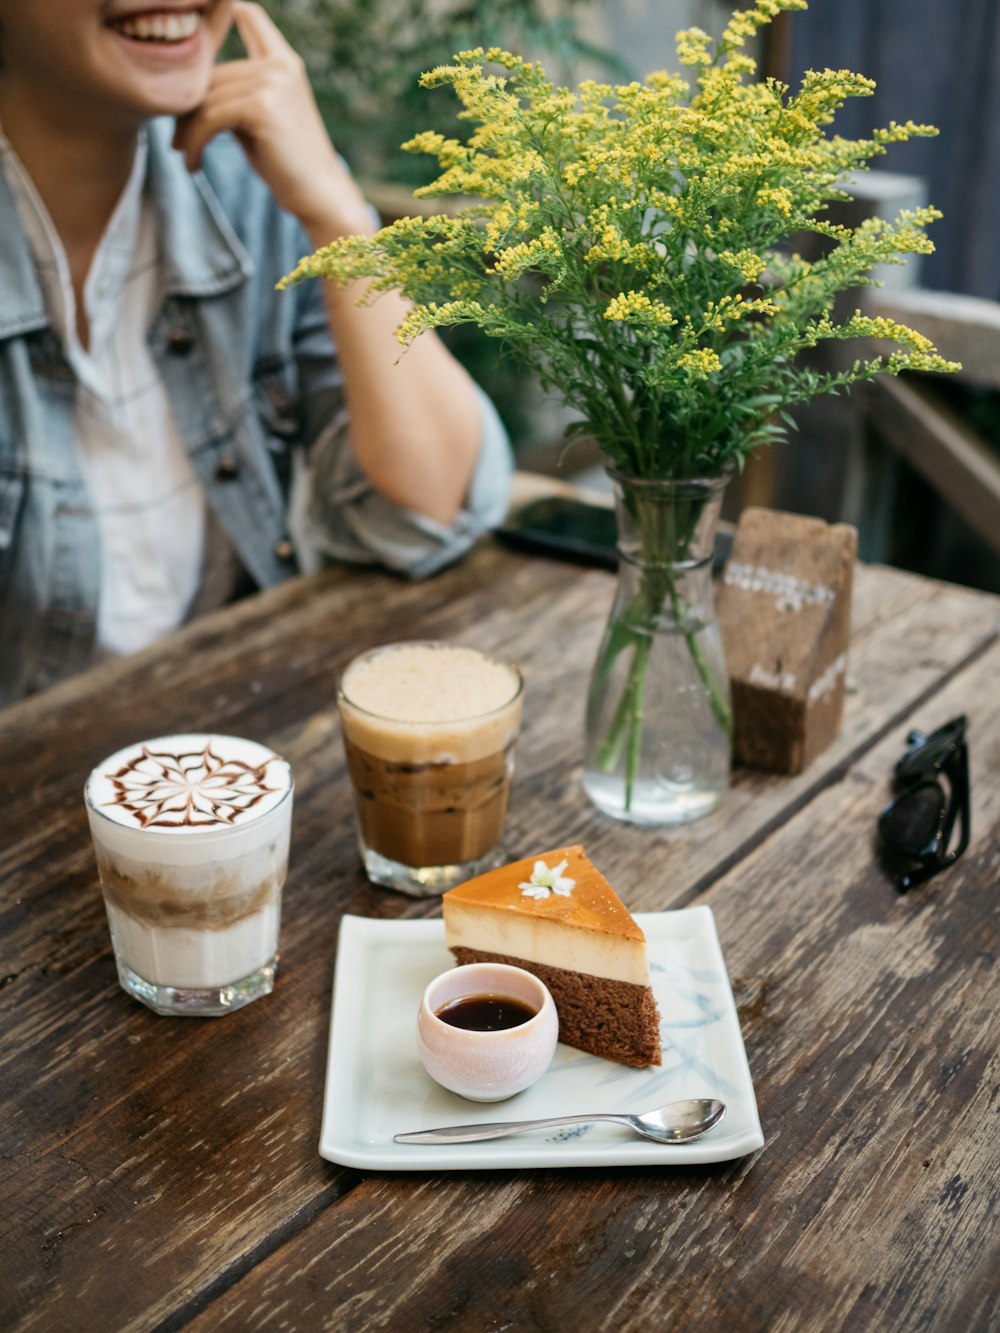 gâteau tranché près du cappuccino et cuillère à café en acier inoxydable gris dans une assiette sur la table